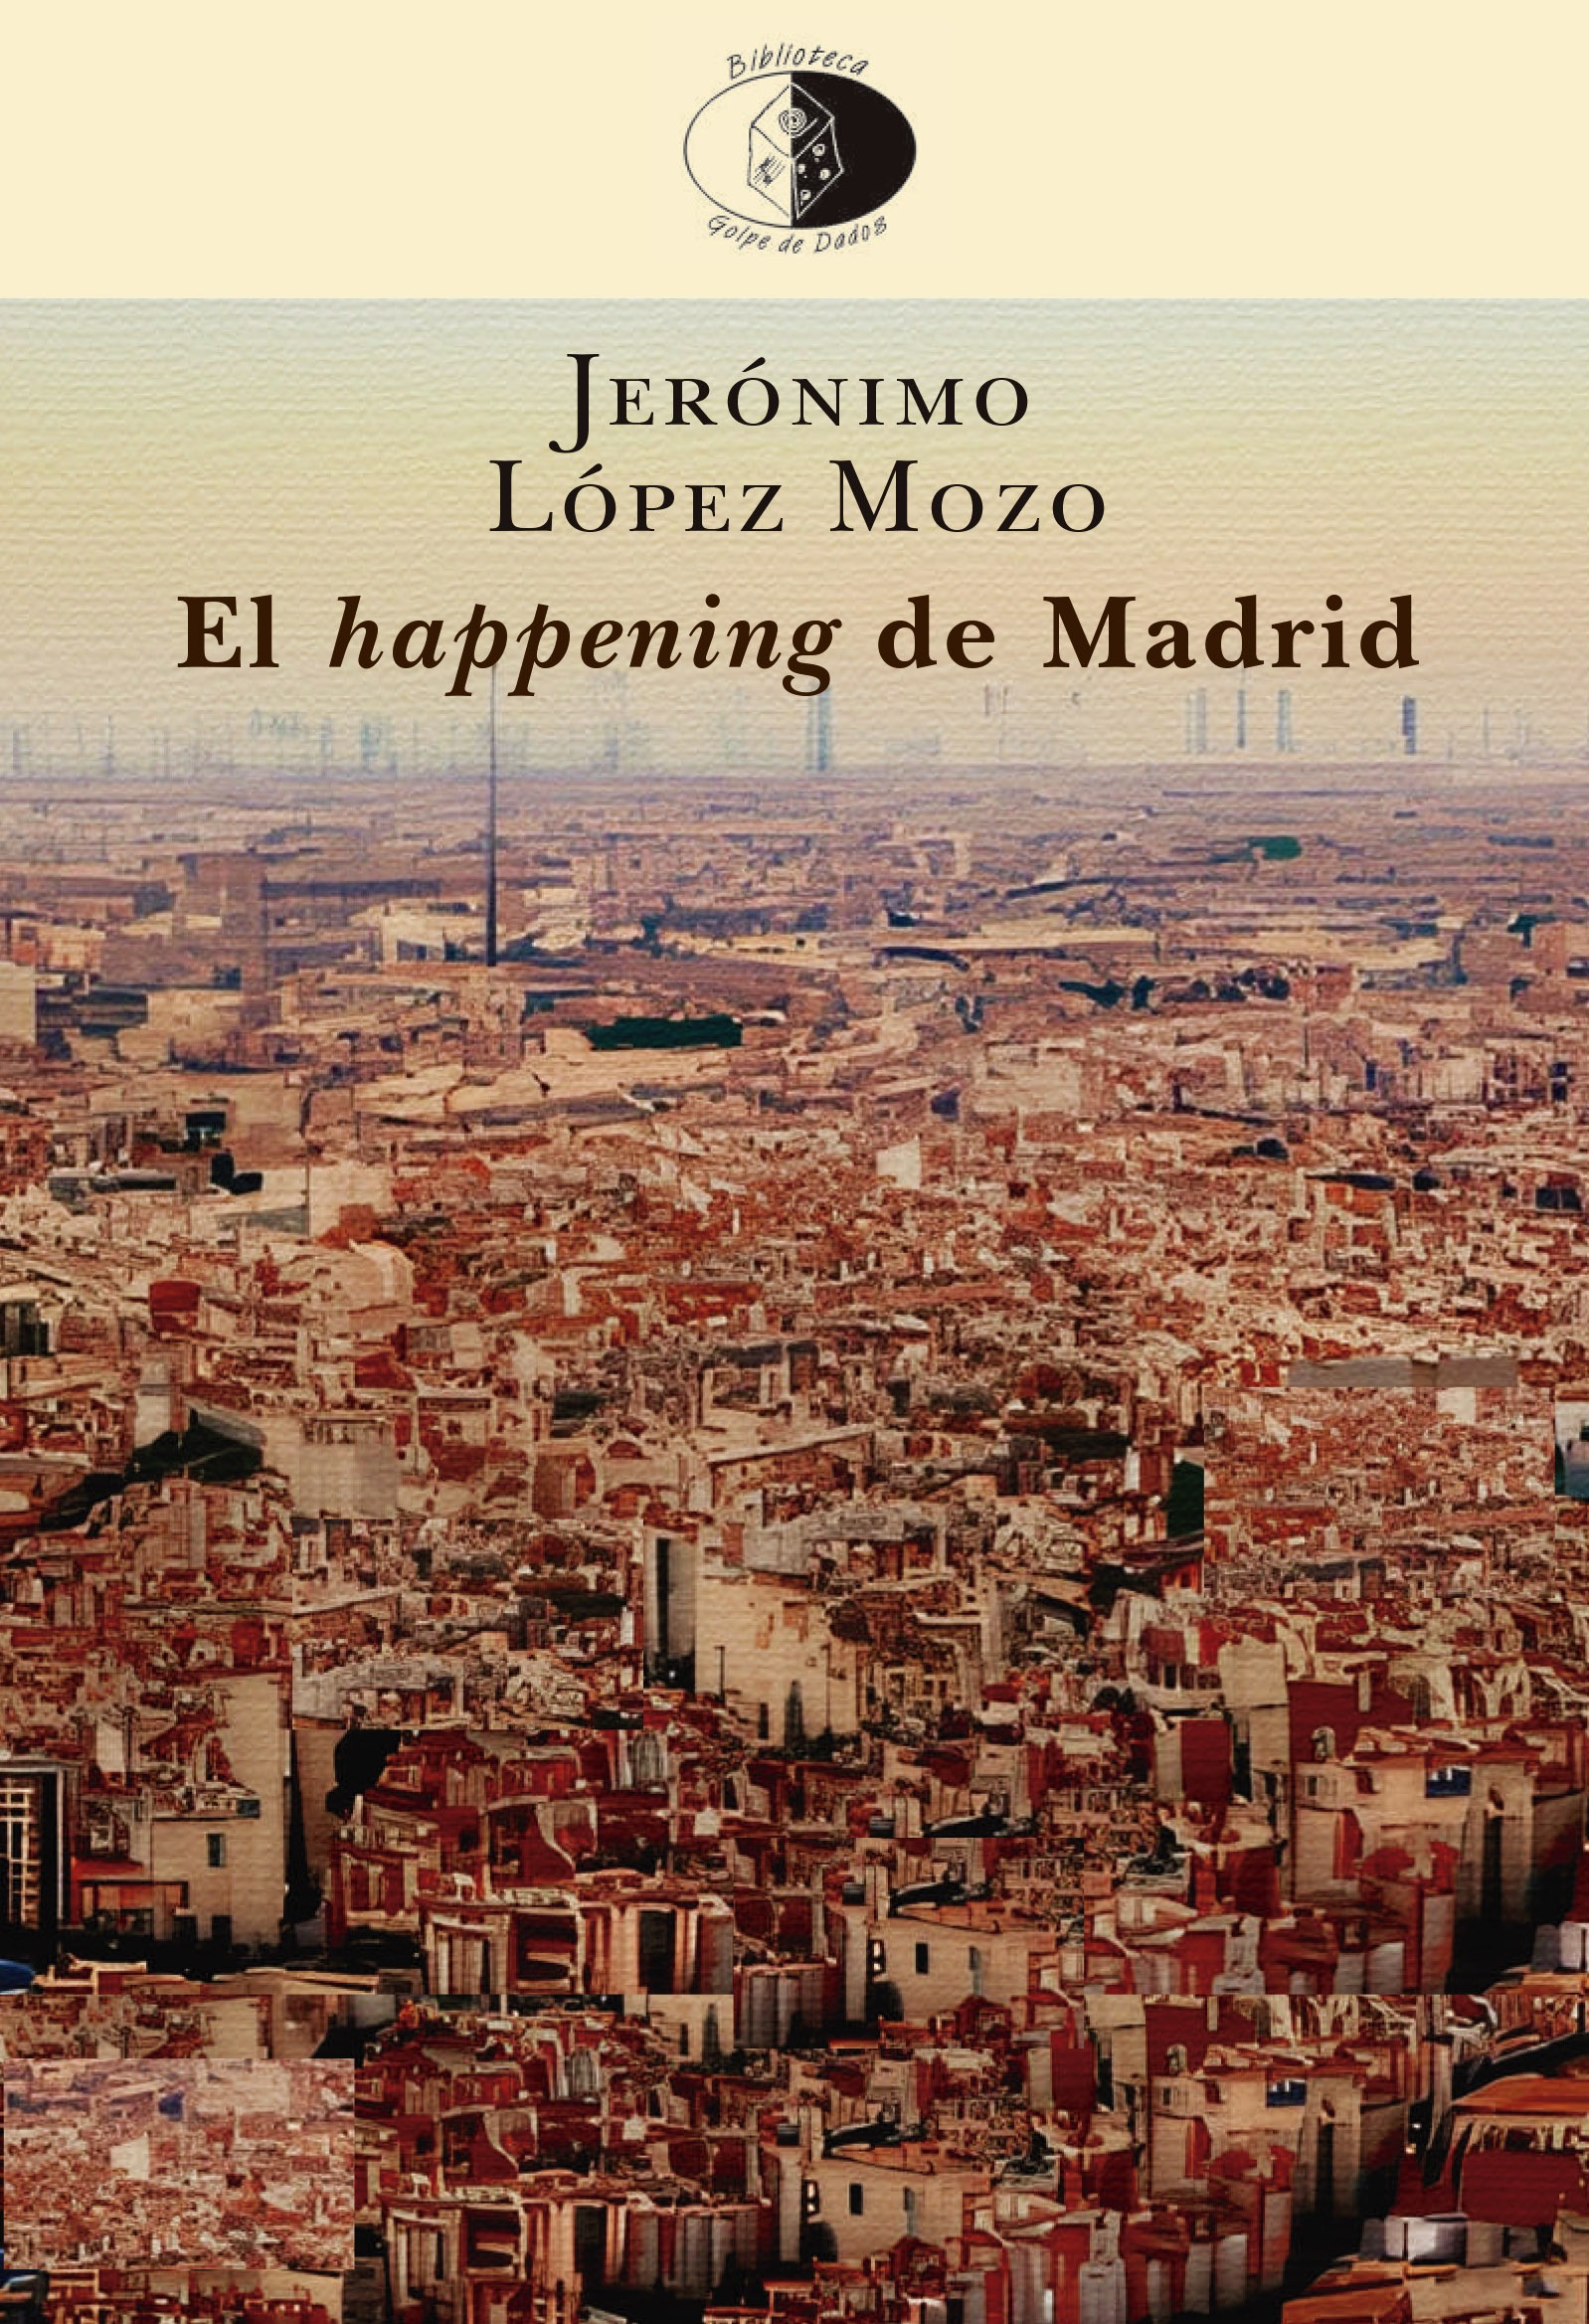 Presentación de El happening de Madrid, de Jerónimo López Mozo, en Madrid